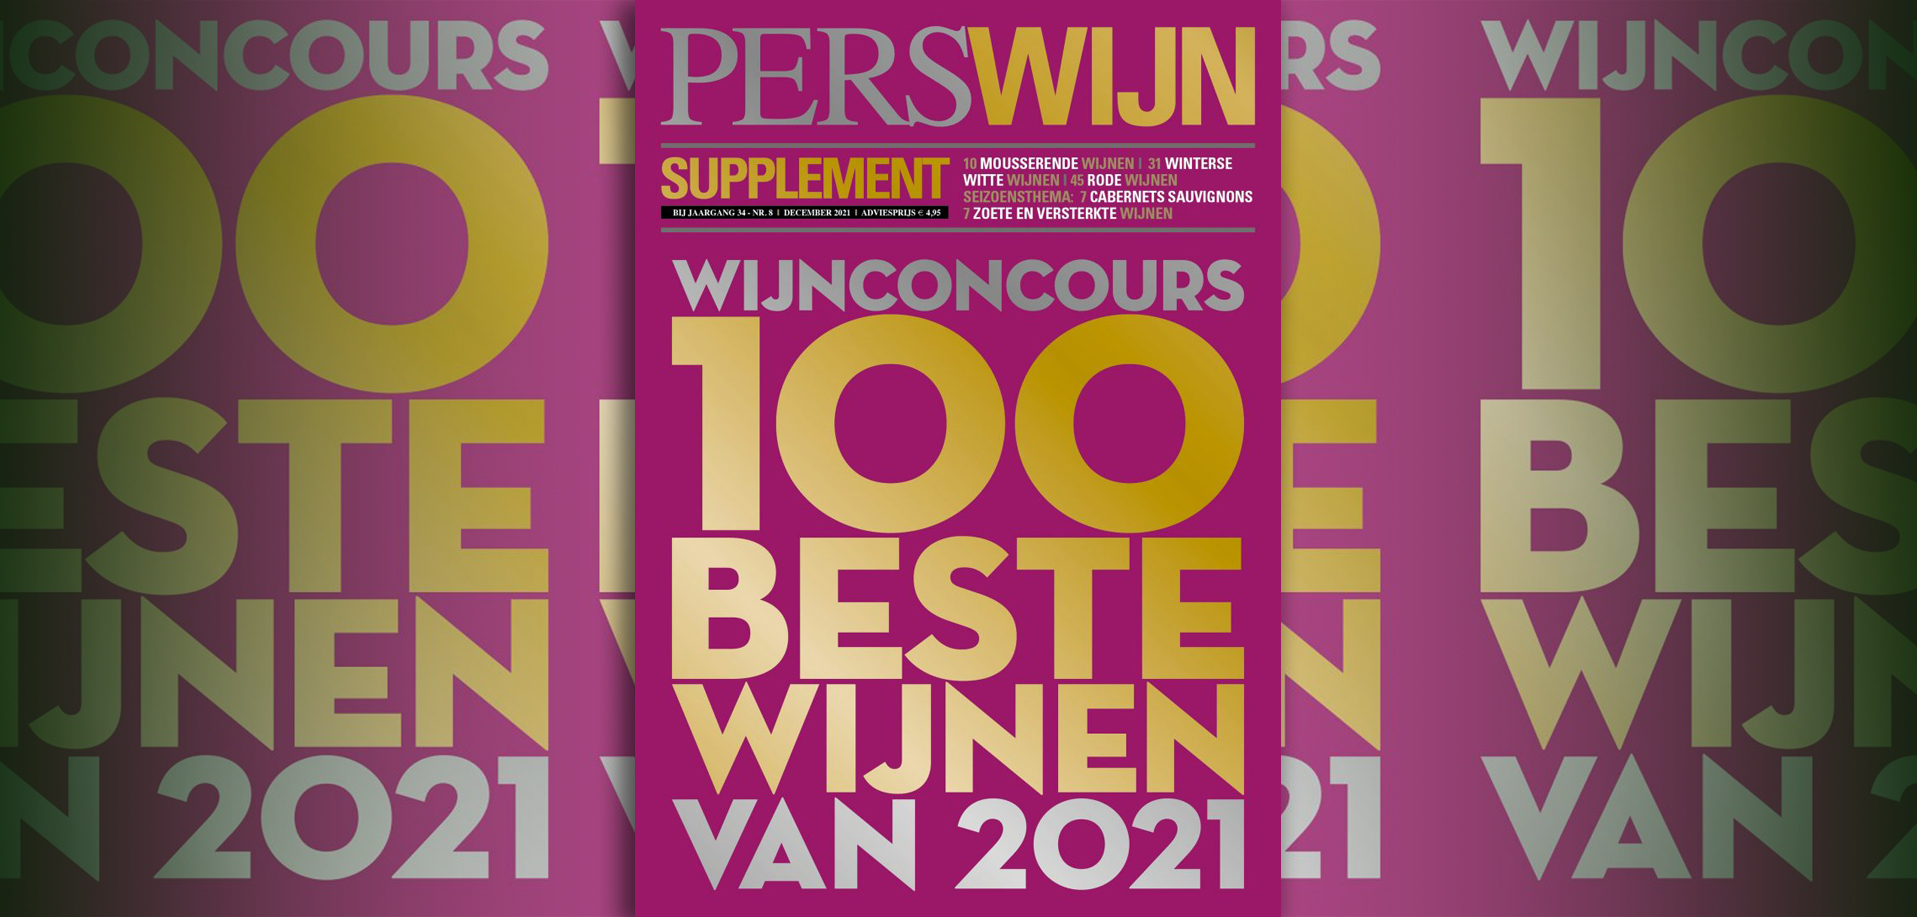 Laurent-Perrier en Clement winnaars Perswijn Wijnconcours 2021 uitgelicht